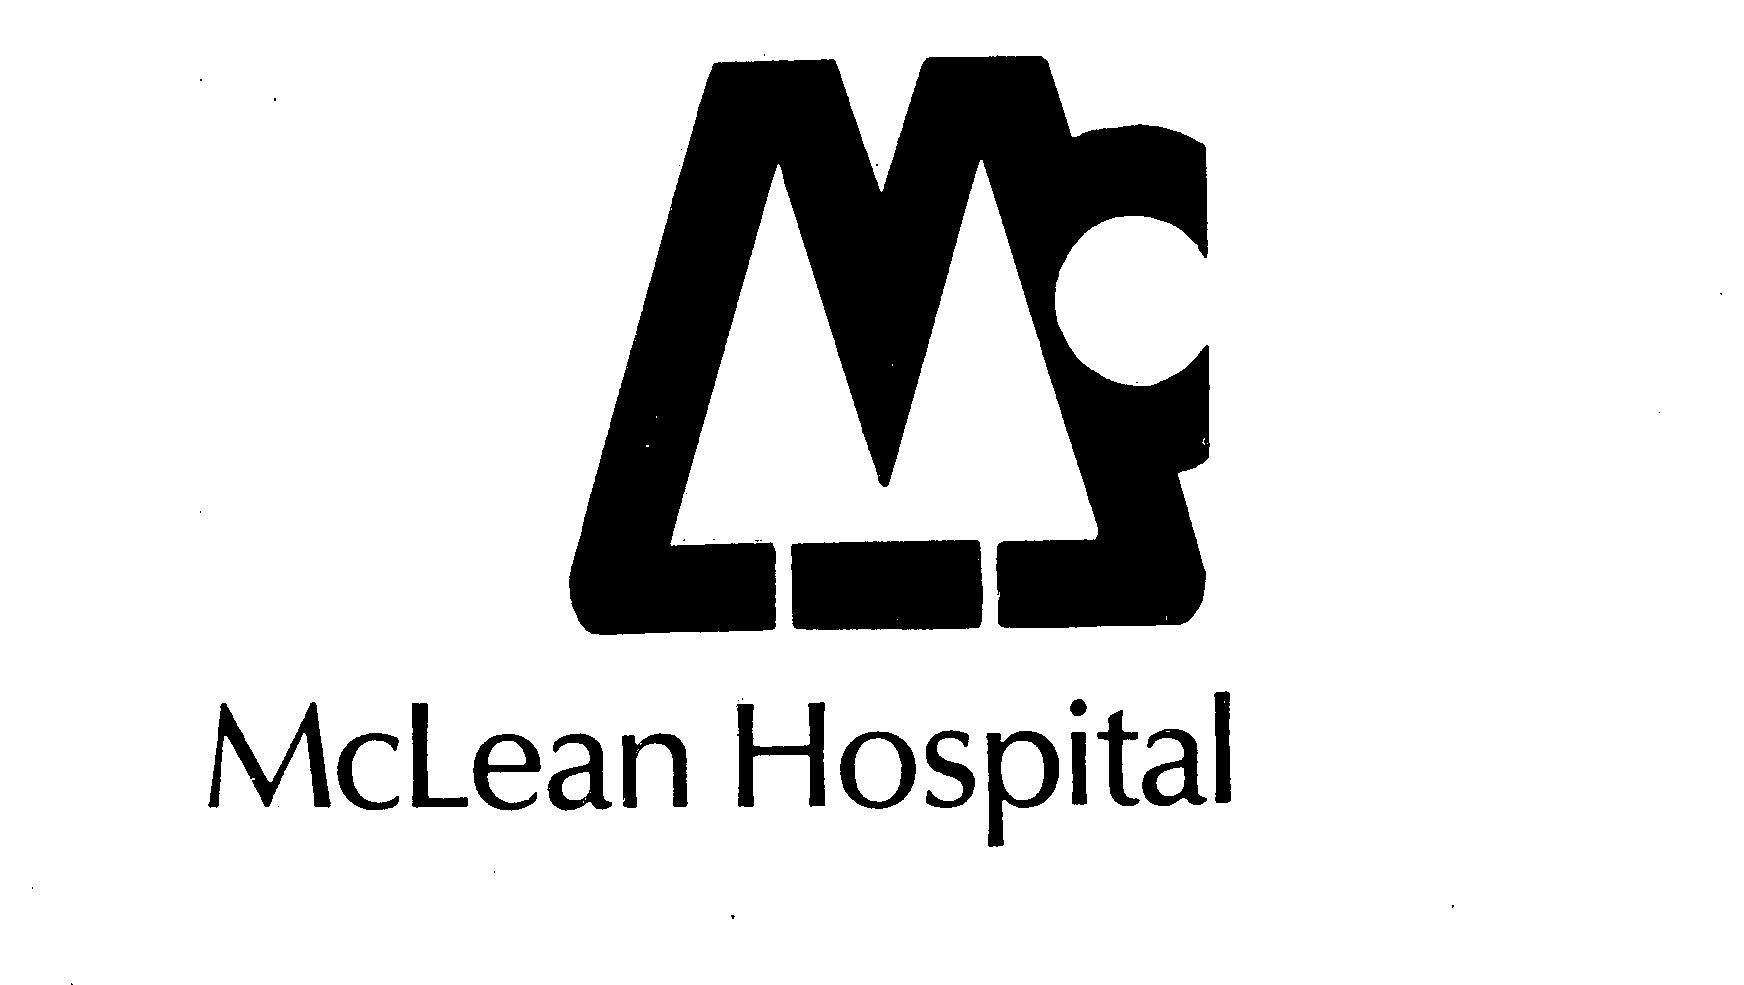  MCLEAN HOSPITAL